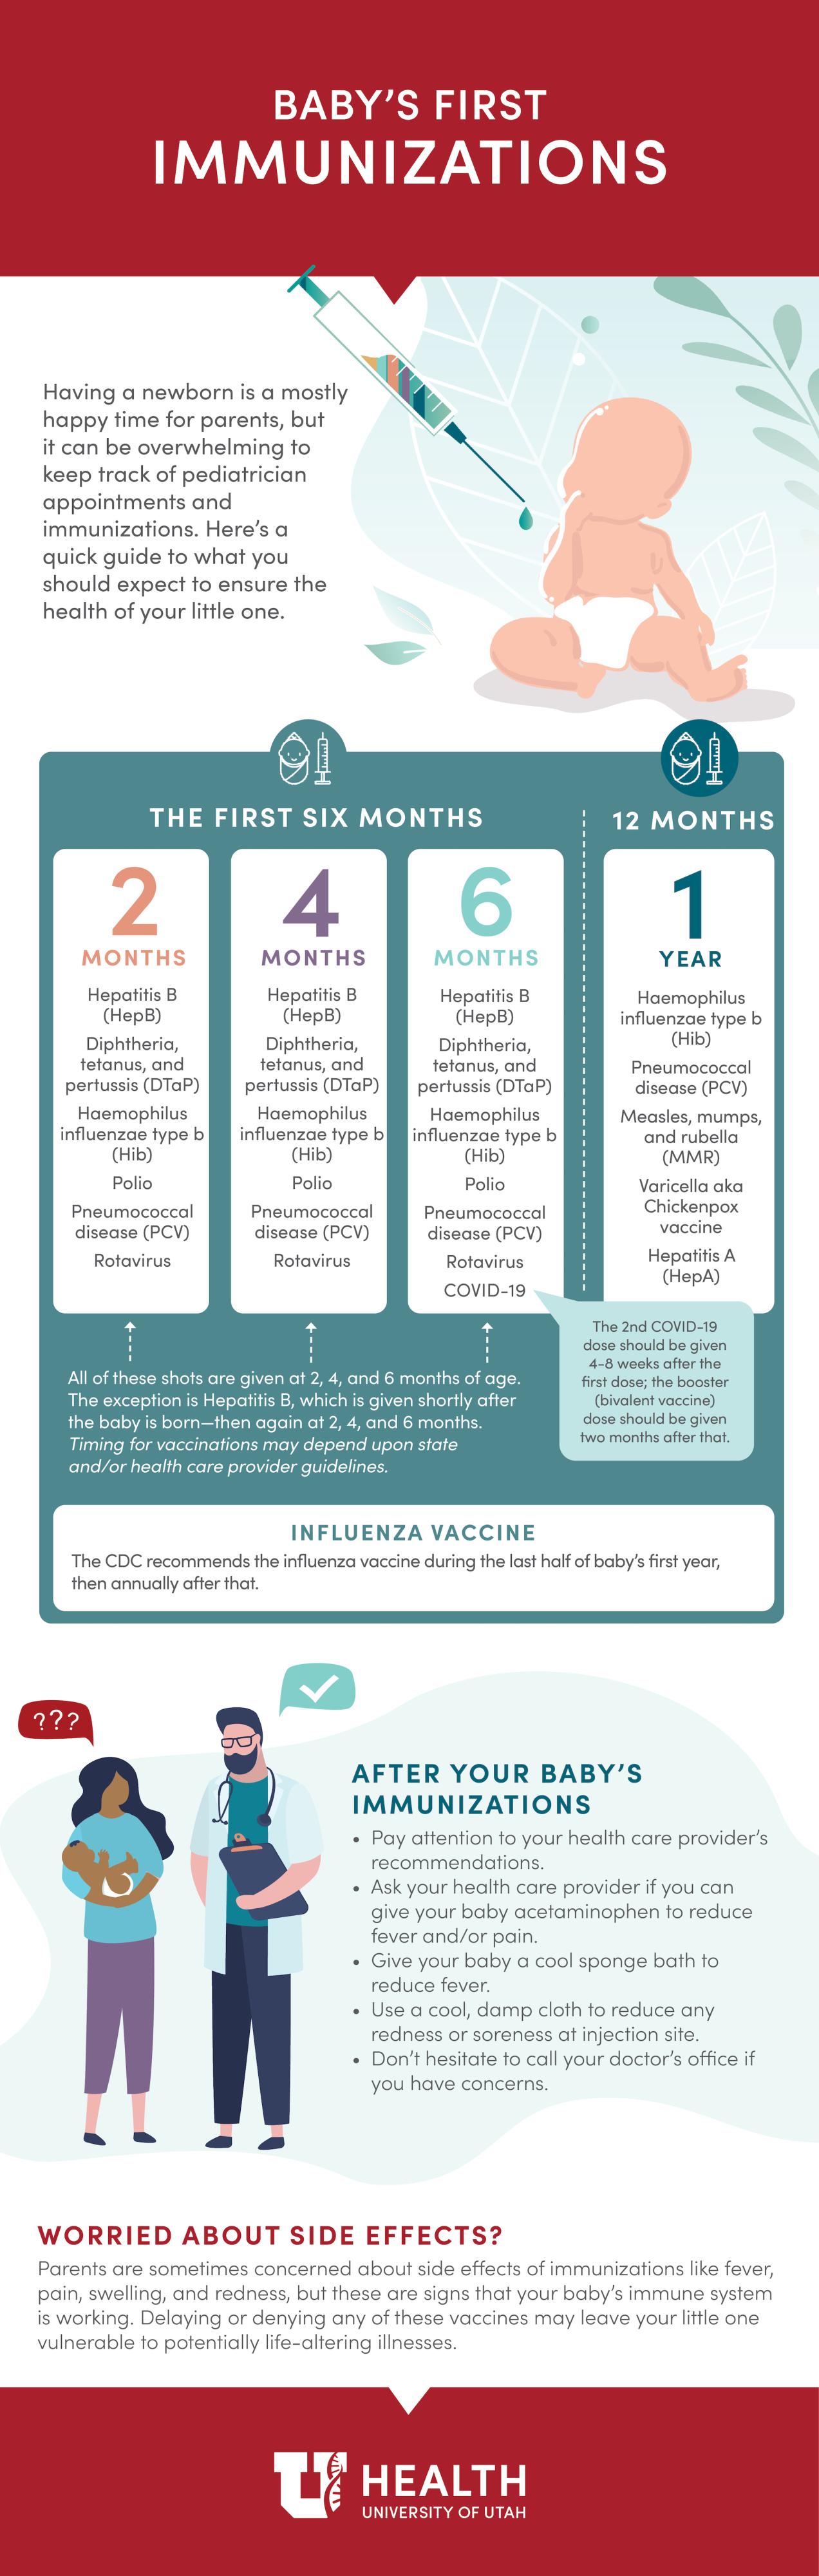 baby immunizations infographic